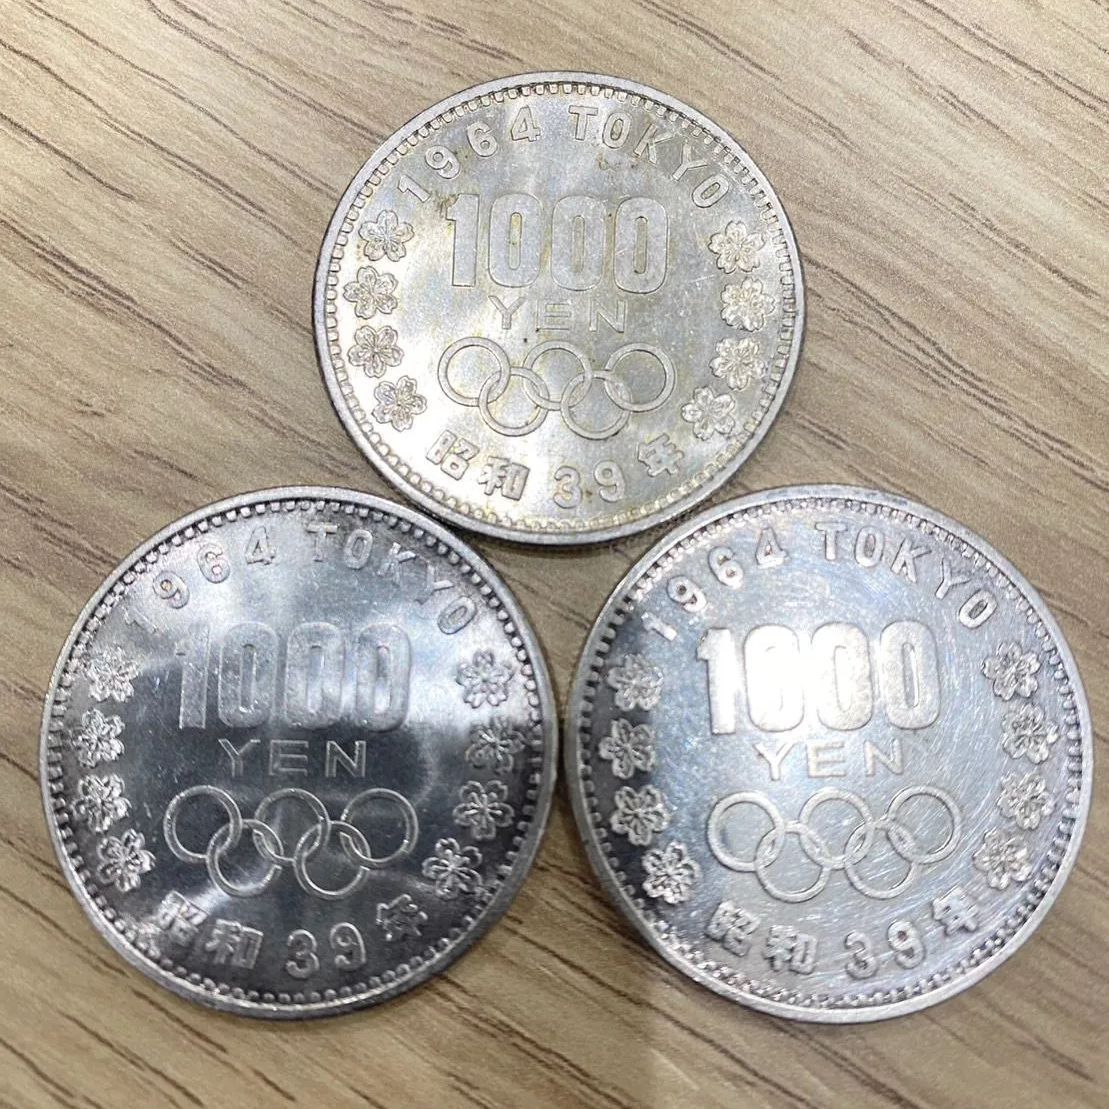 東京オリンピック1964年記念銀貨【1000円・千円】プルーフ貨幣すべての 